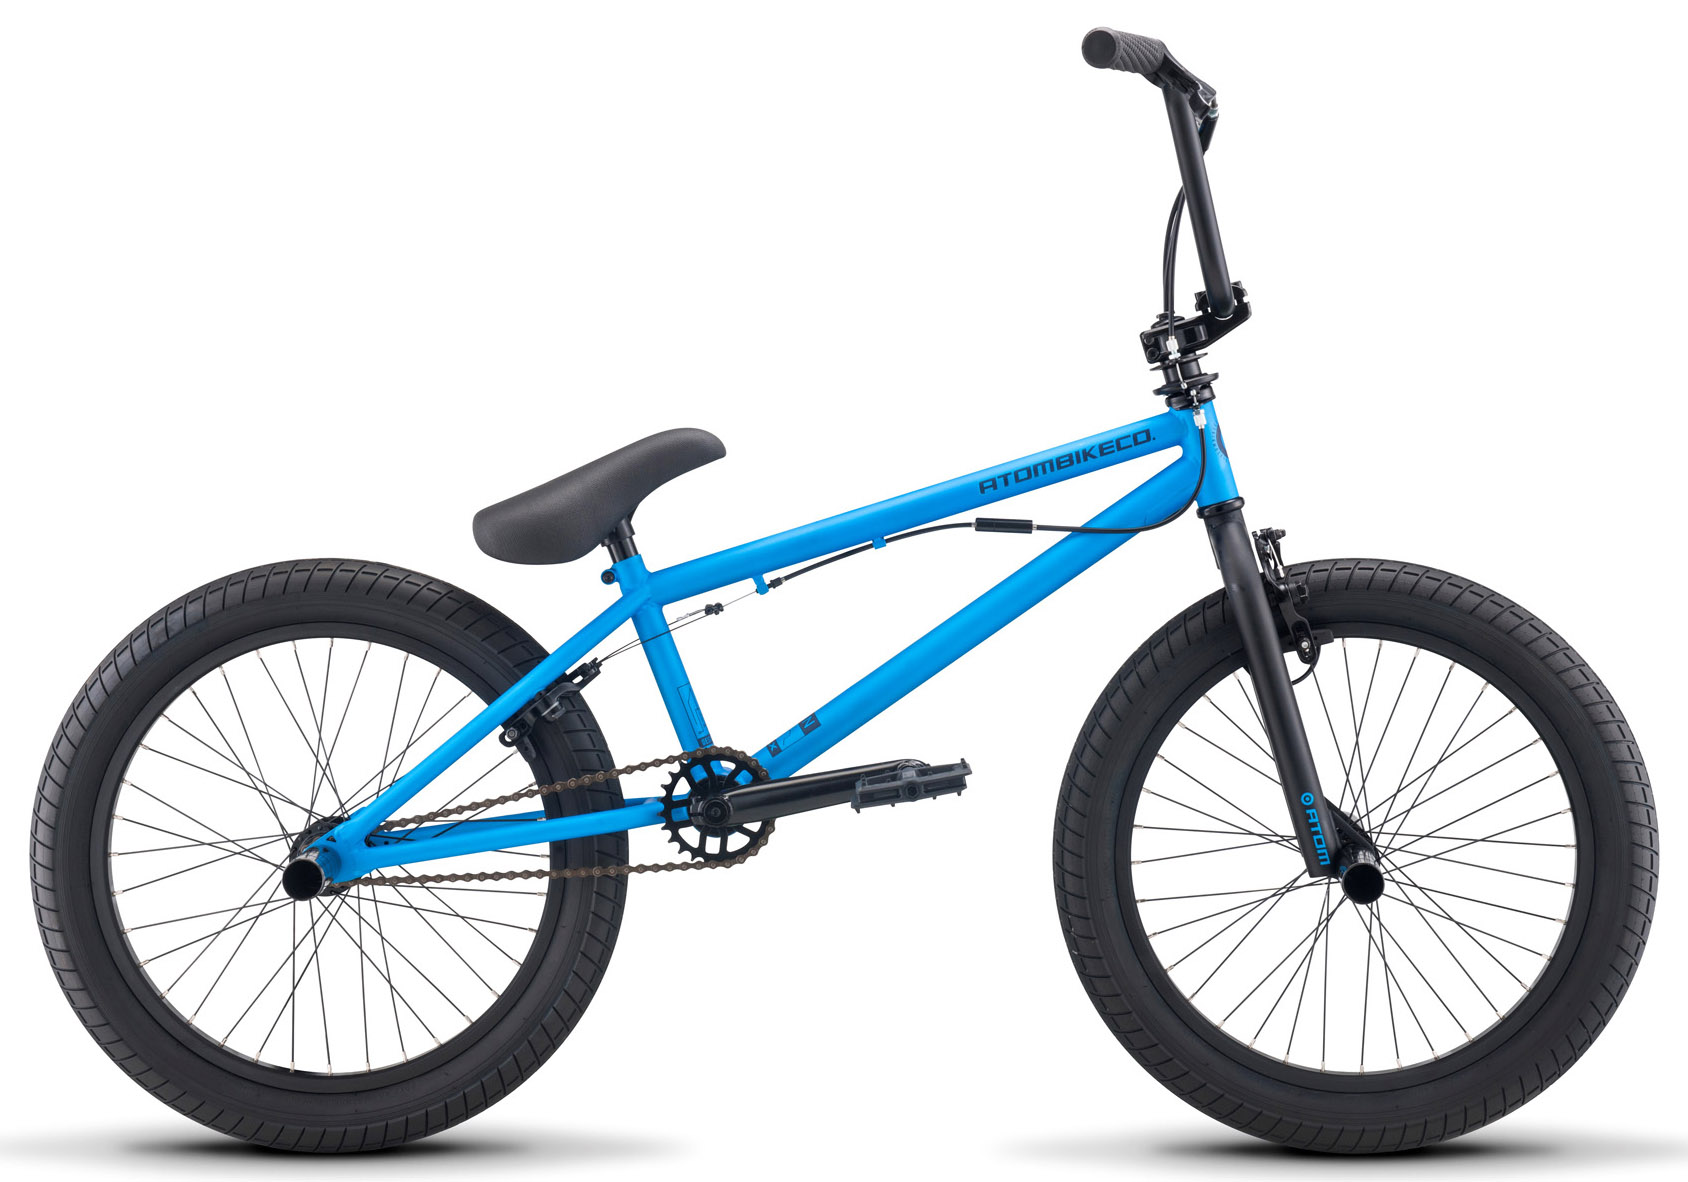  Отзывы о Велосипеде BMX Atom Ion DLX 2020